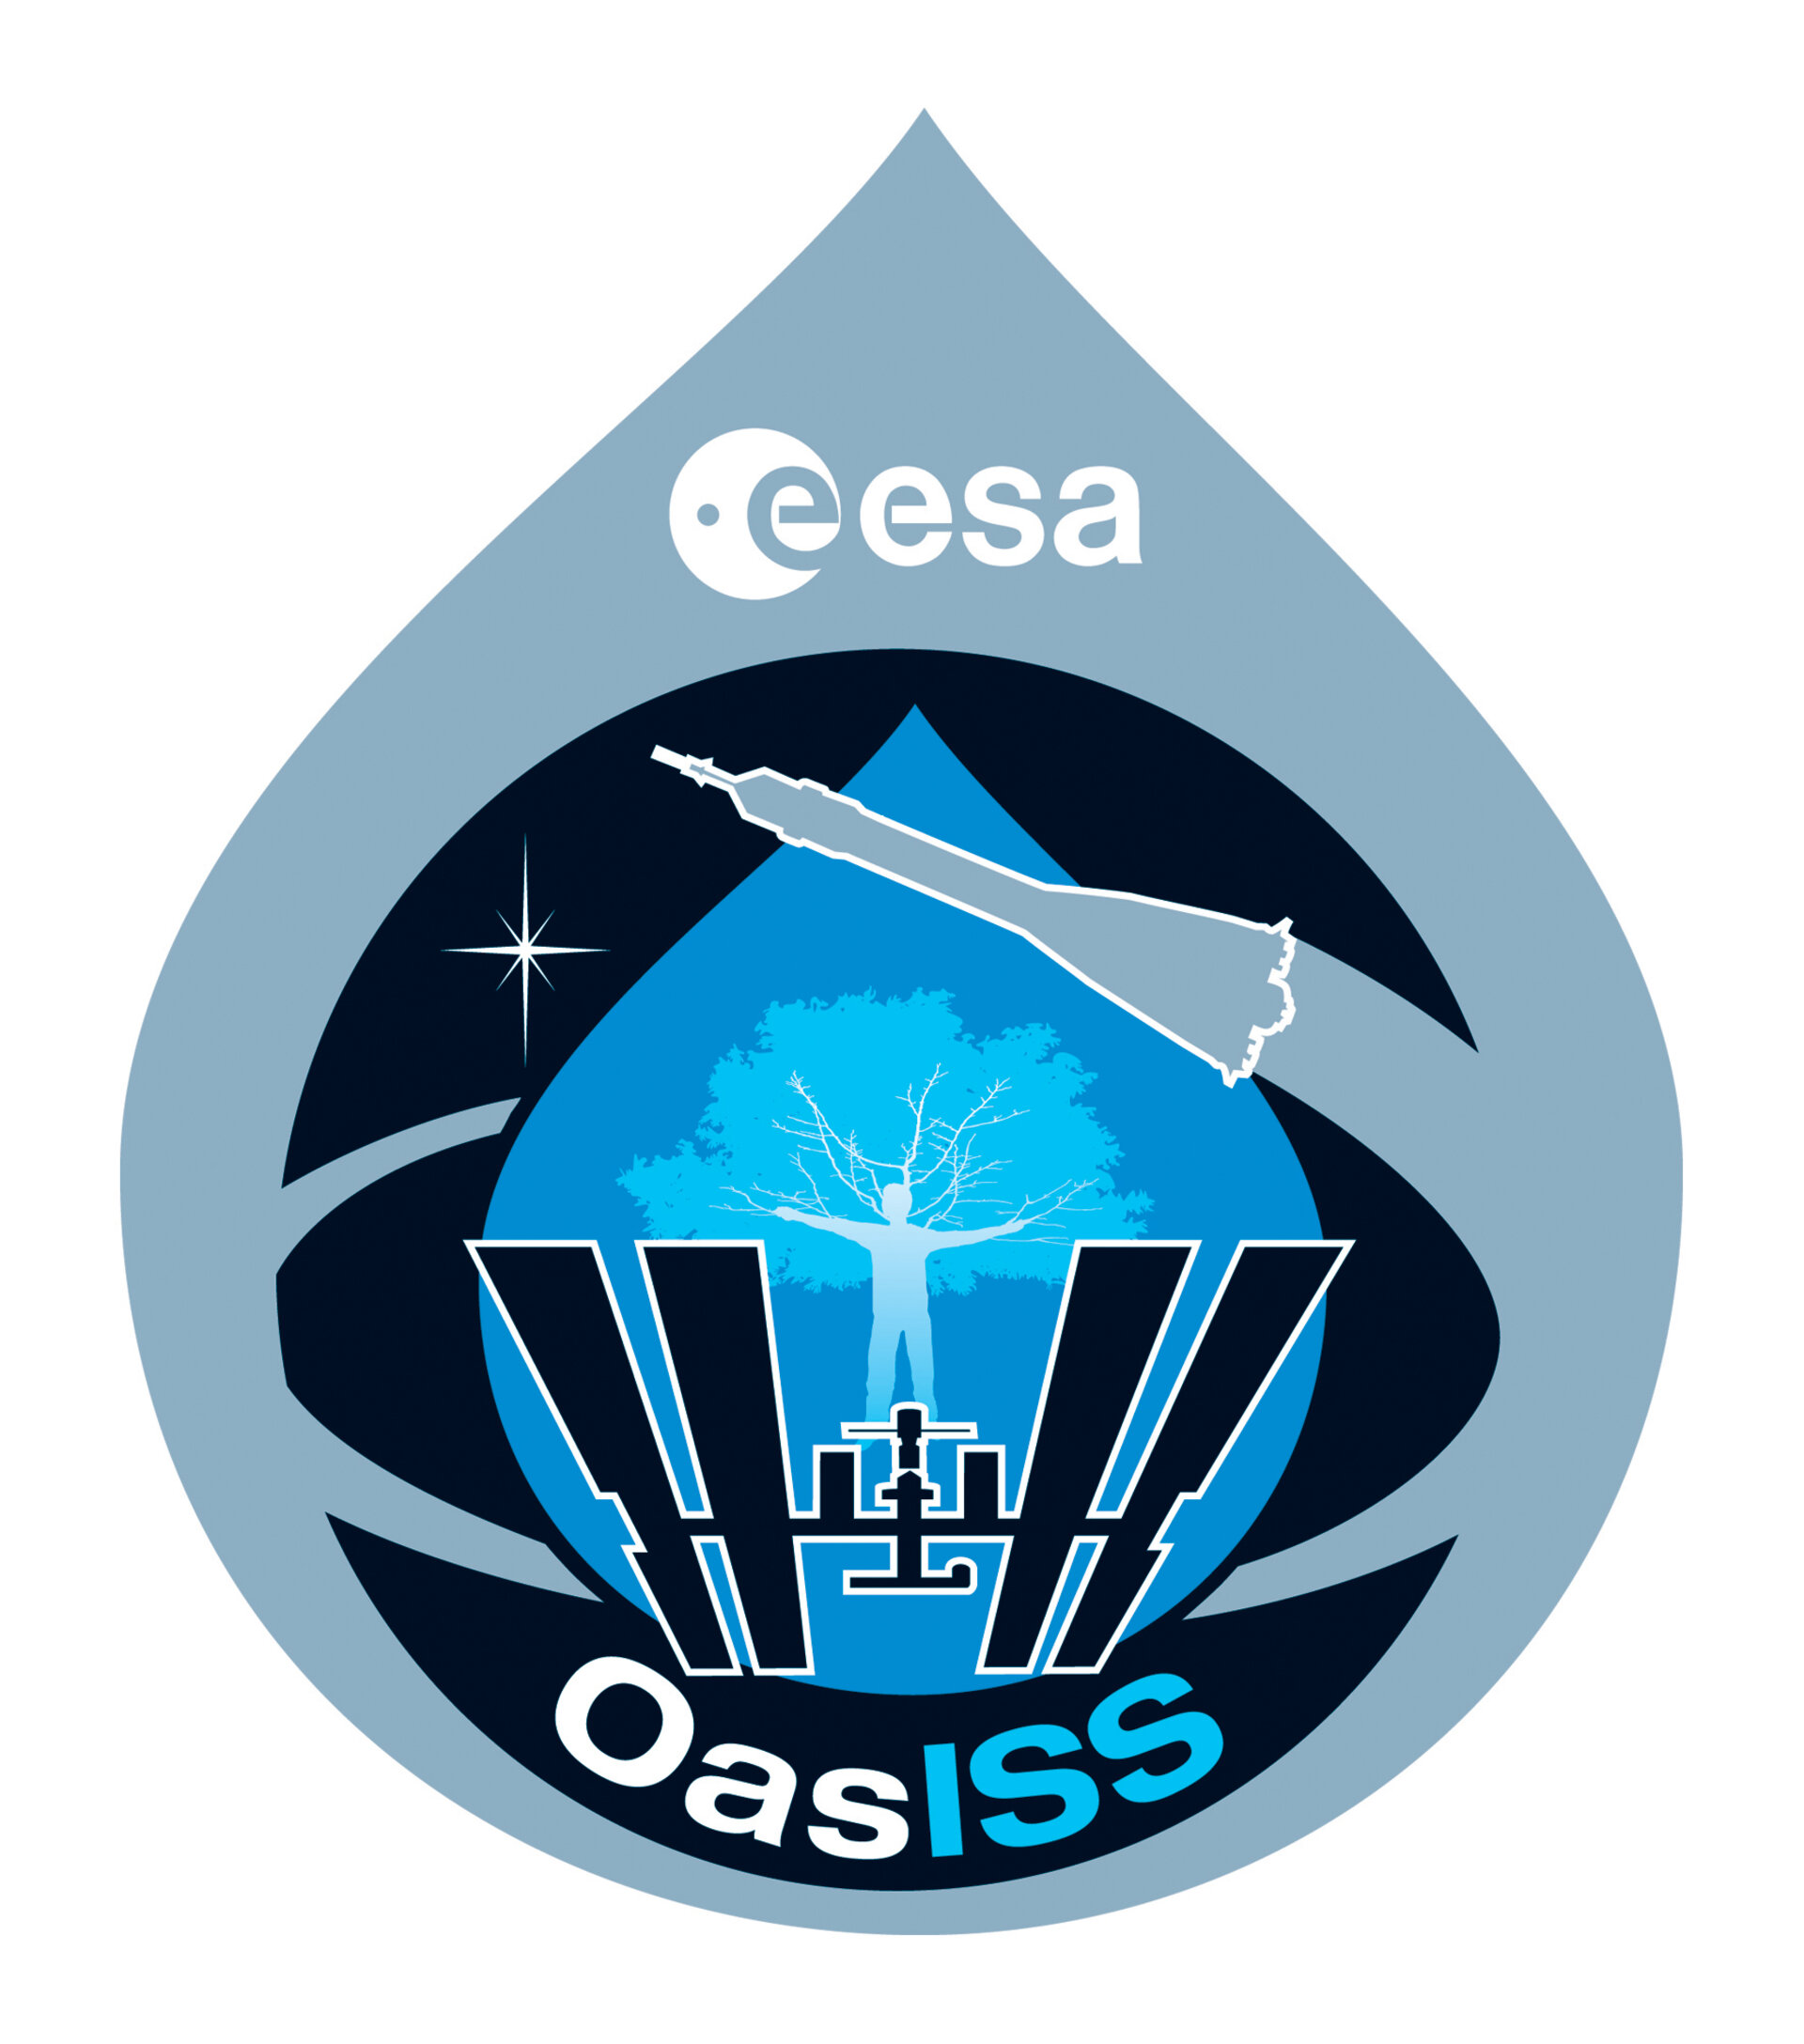 Het logo van de OasISS-missie